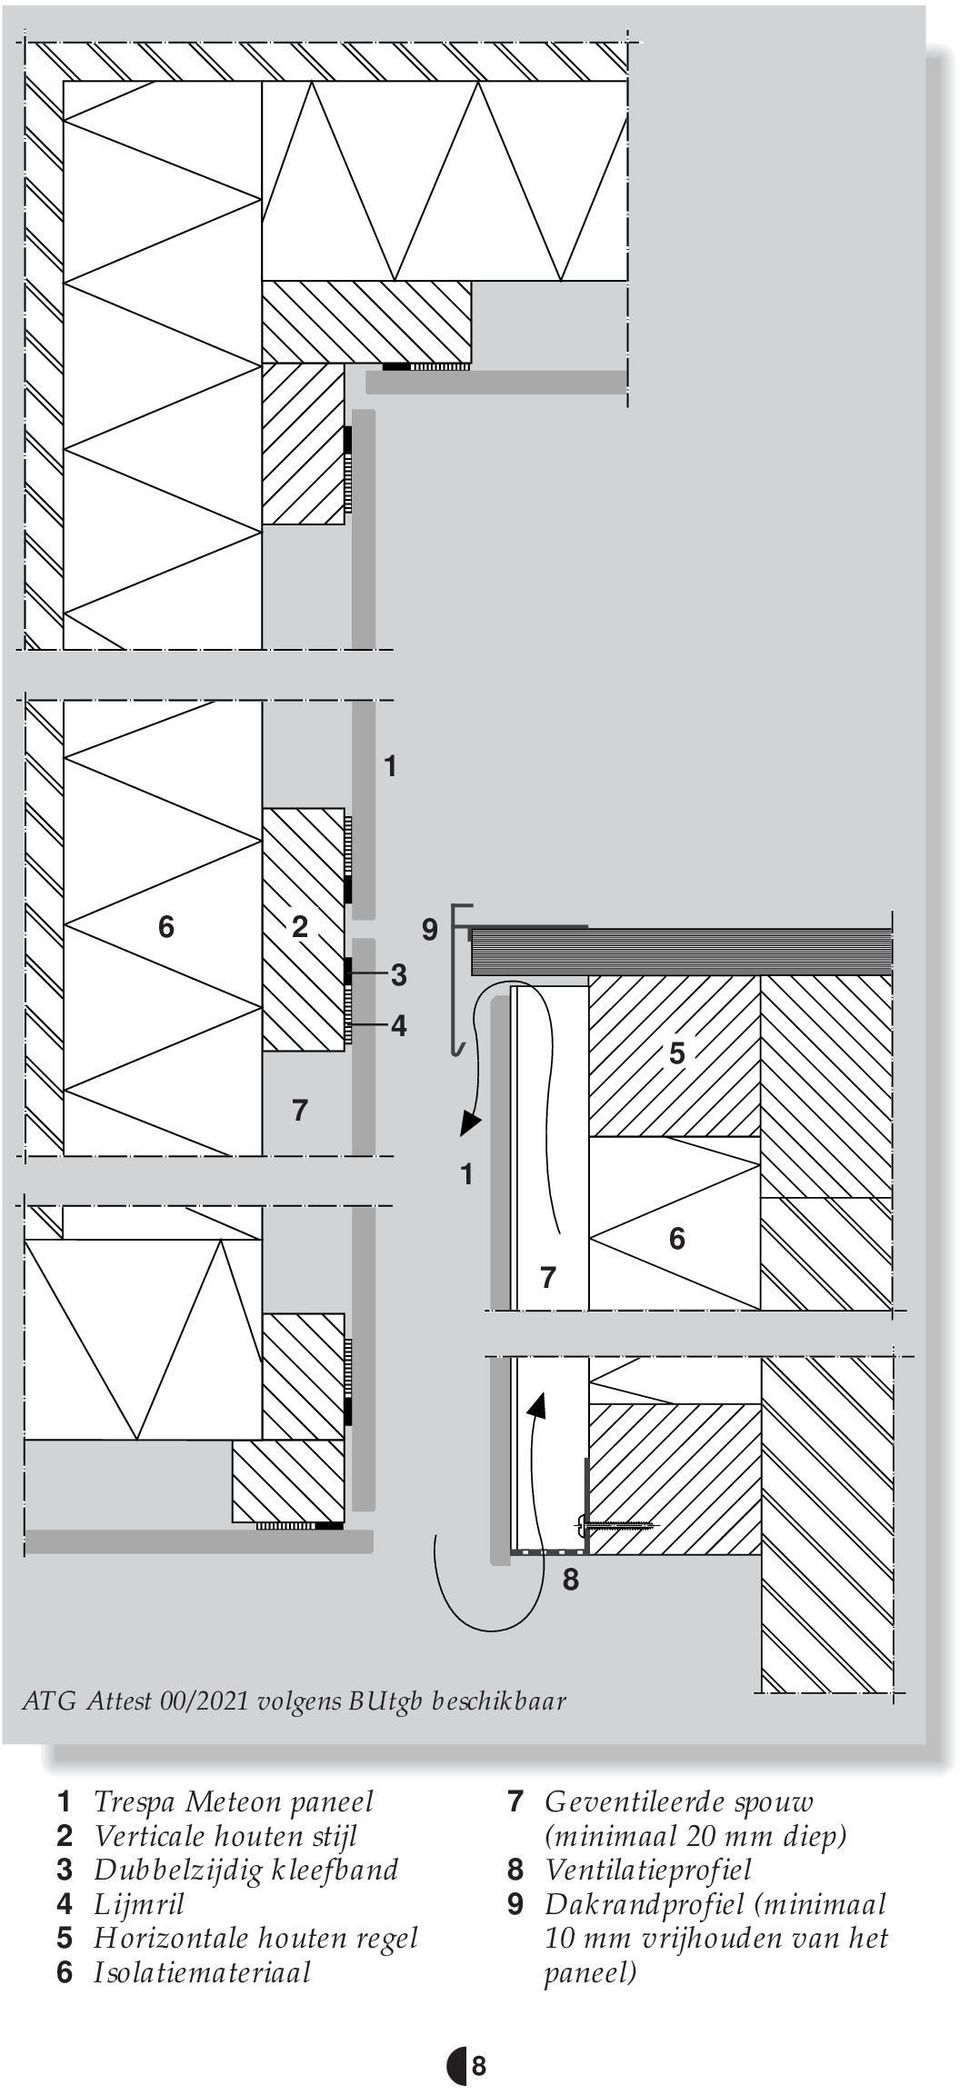 Horizontale houten regel 6 Isolatiemateriaal 7 Geventileerde spouw (minimaal 20